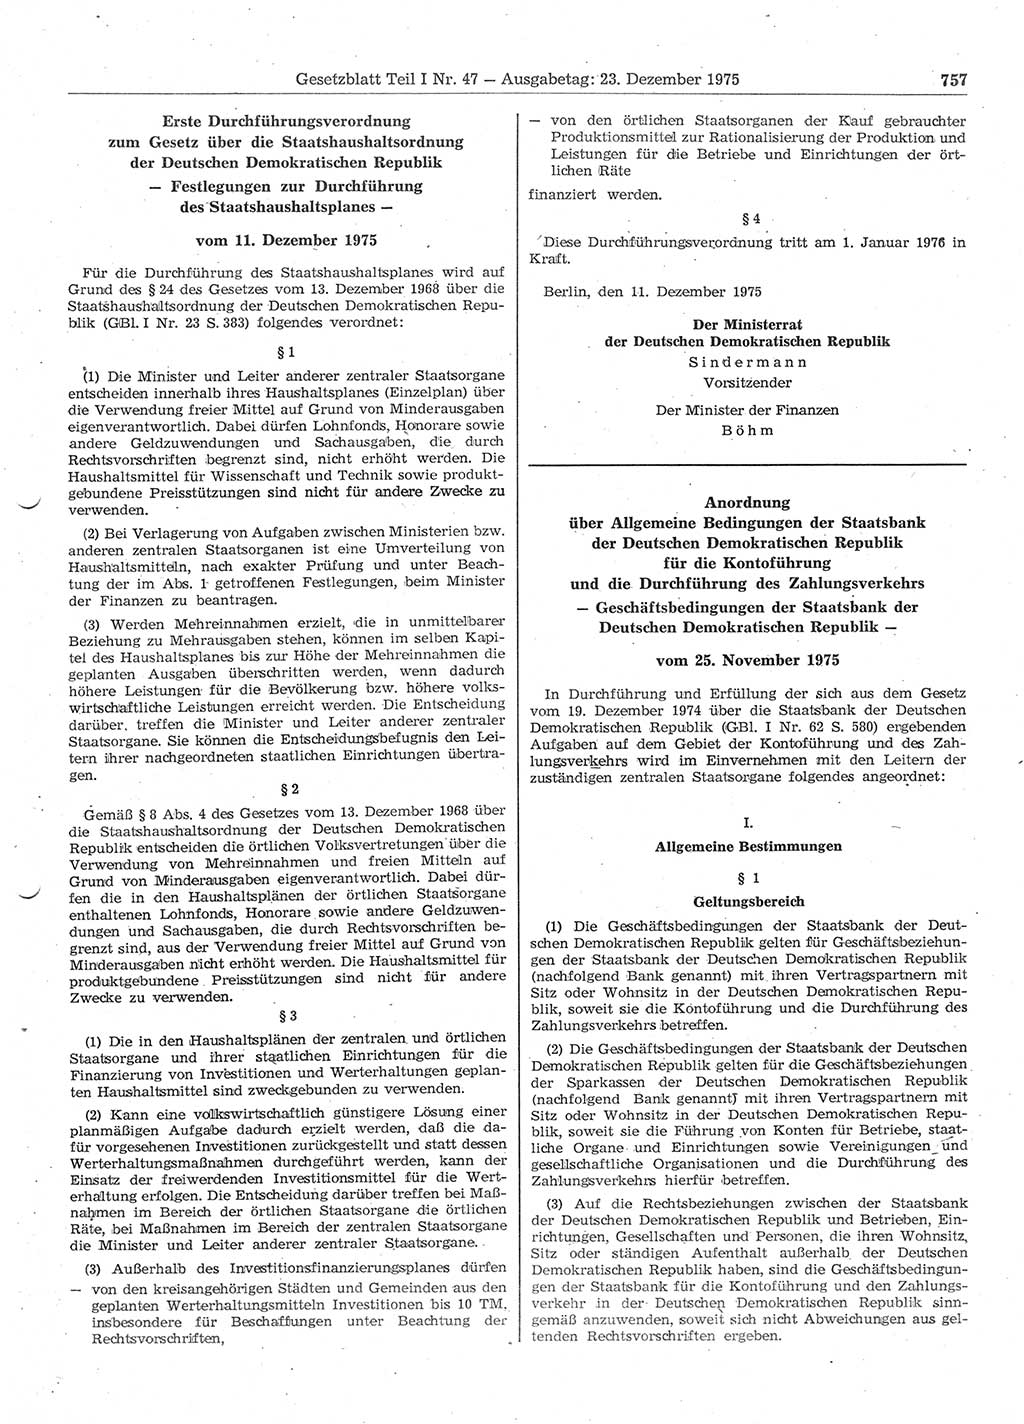 Gesetzblatt (GBl.) der Deutschen Demokratischen Republik (DDR) Teil Ⅰ 1975, Seite 757 (GBl. DDR Ⅰ 1975, S. 757)